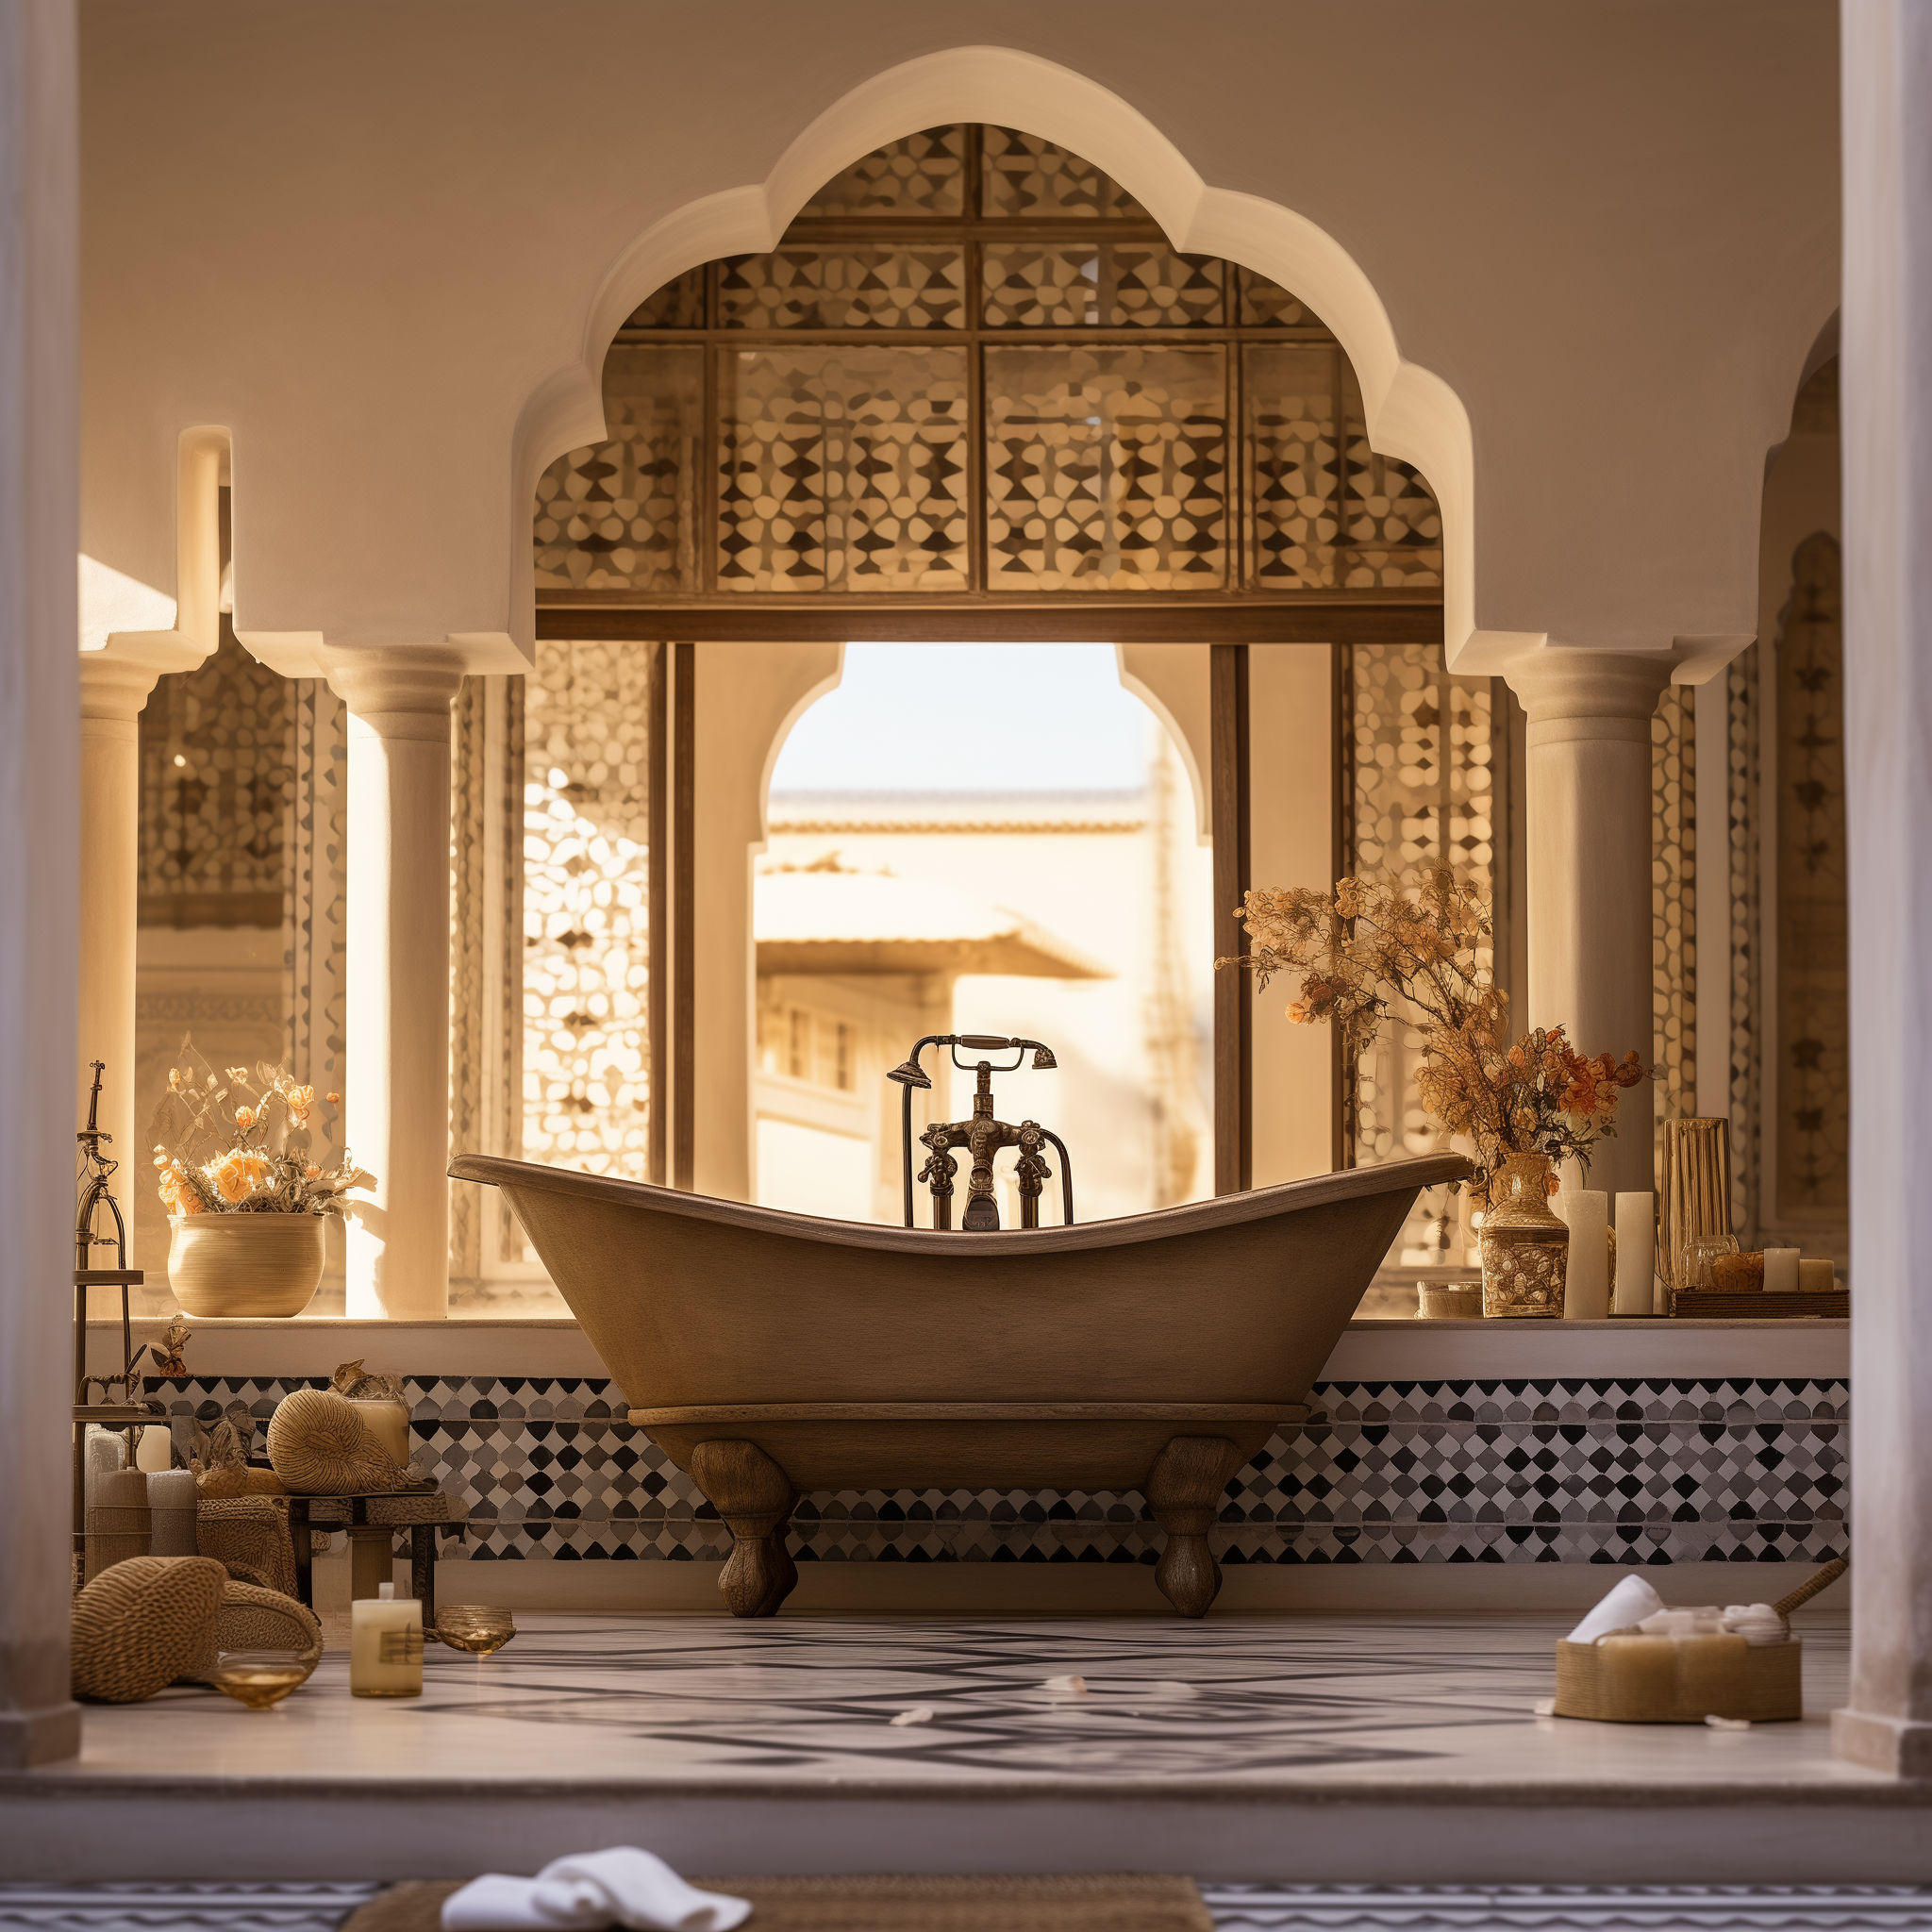 moroccan bathroom ideas decor style design inspired interior architecture theme